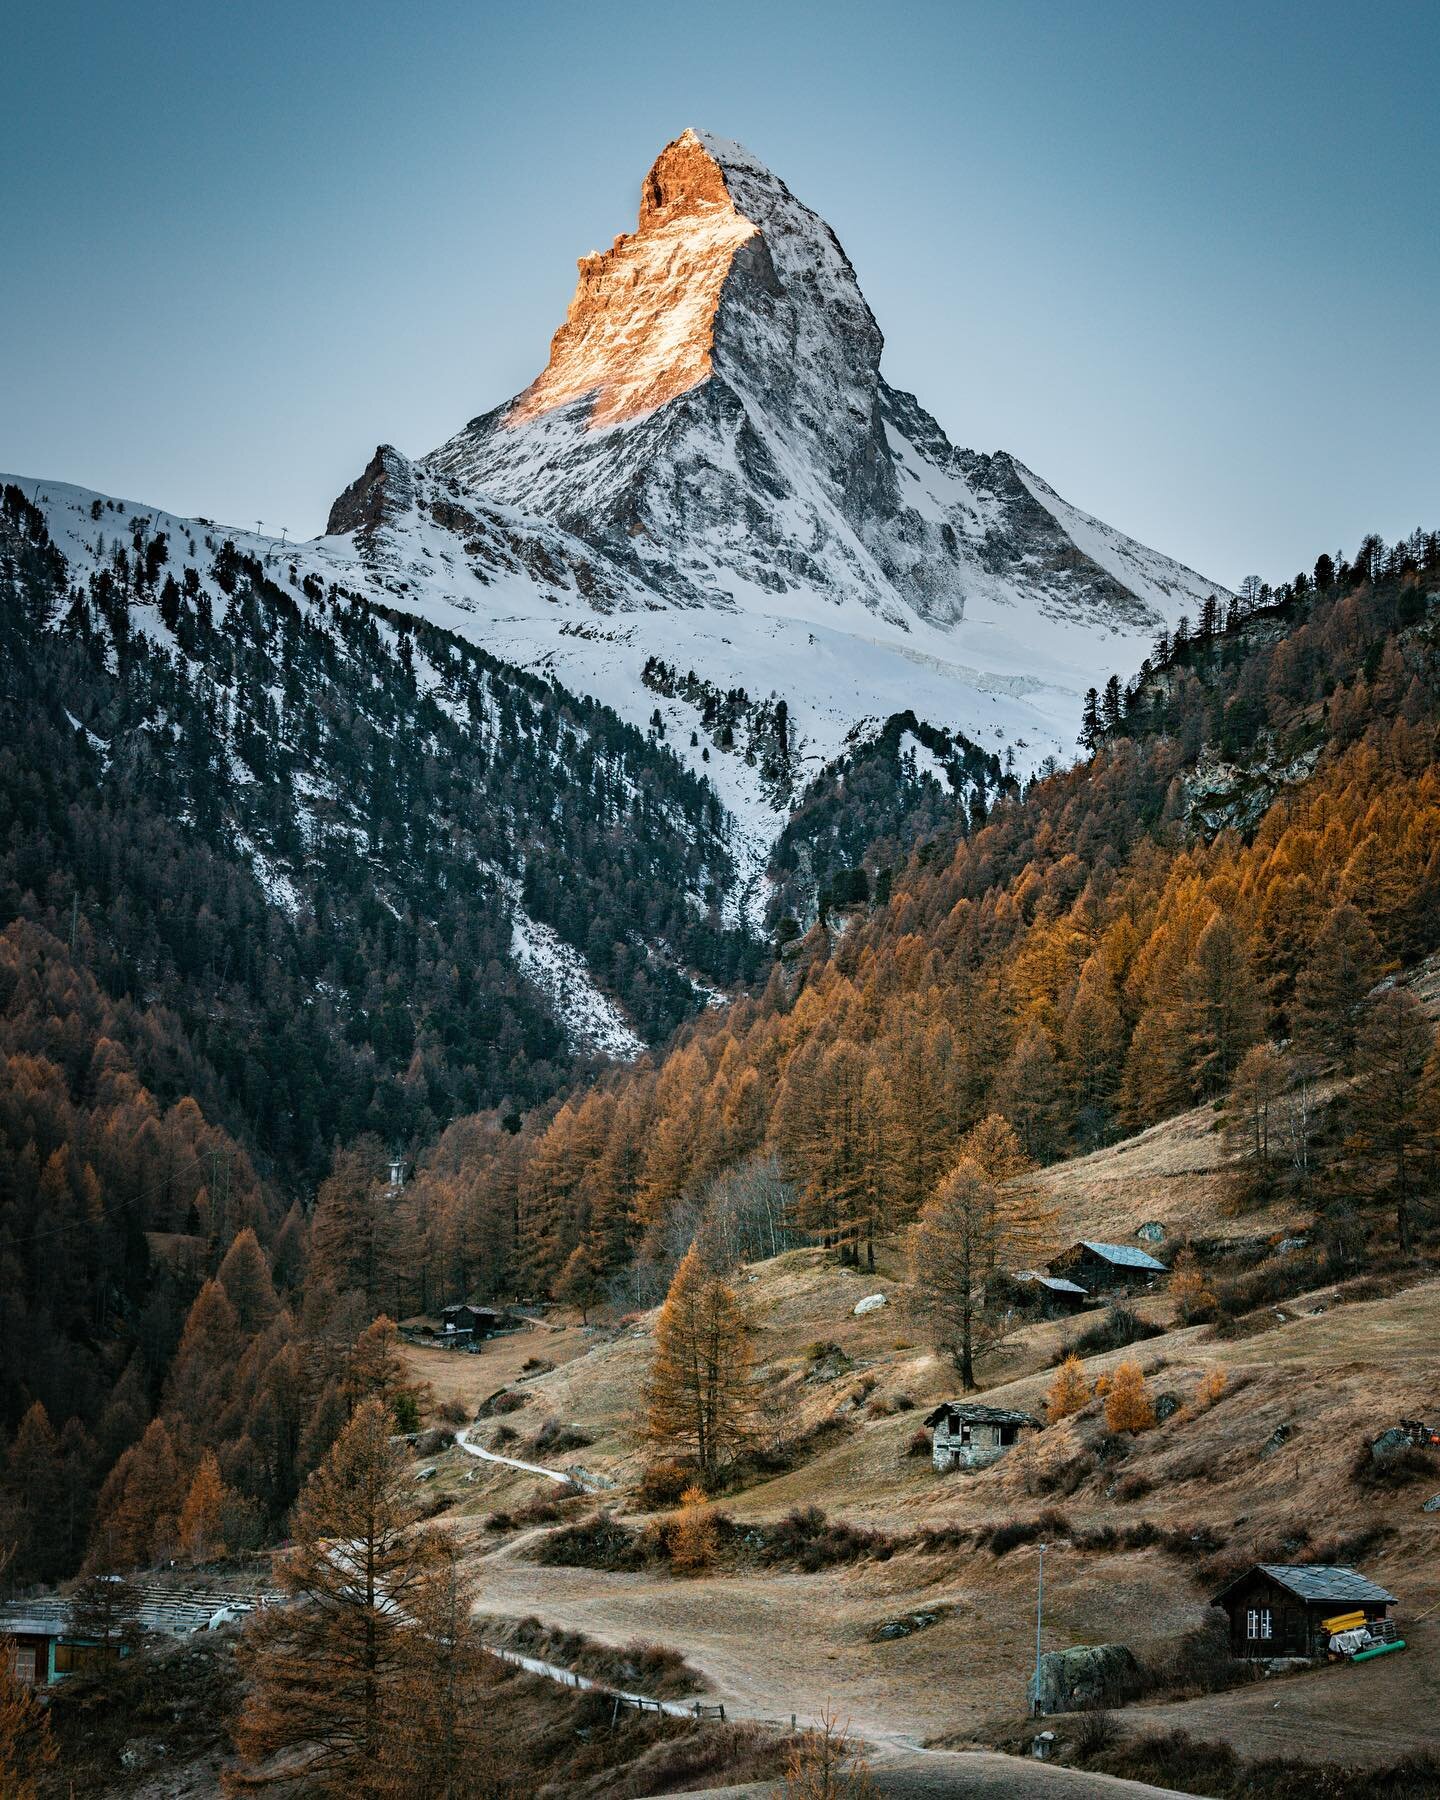 Matterhorn mornings, definitely some of the crispest, freshest air.